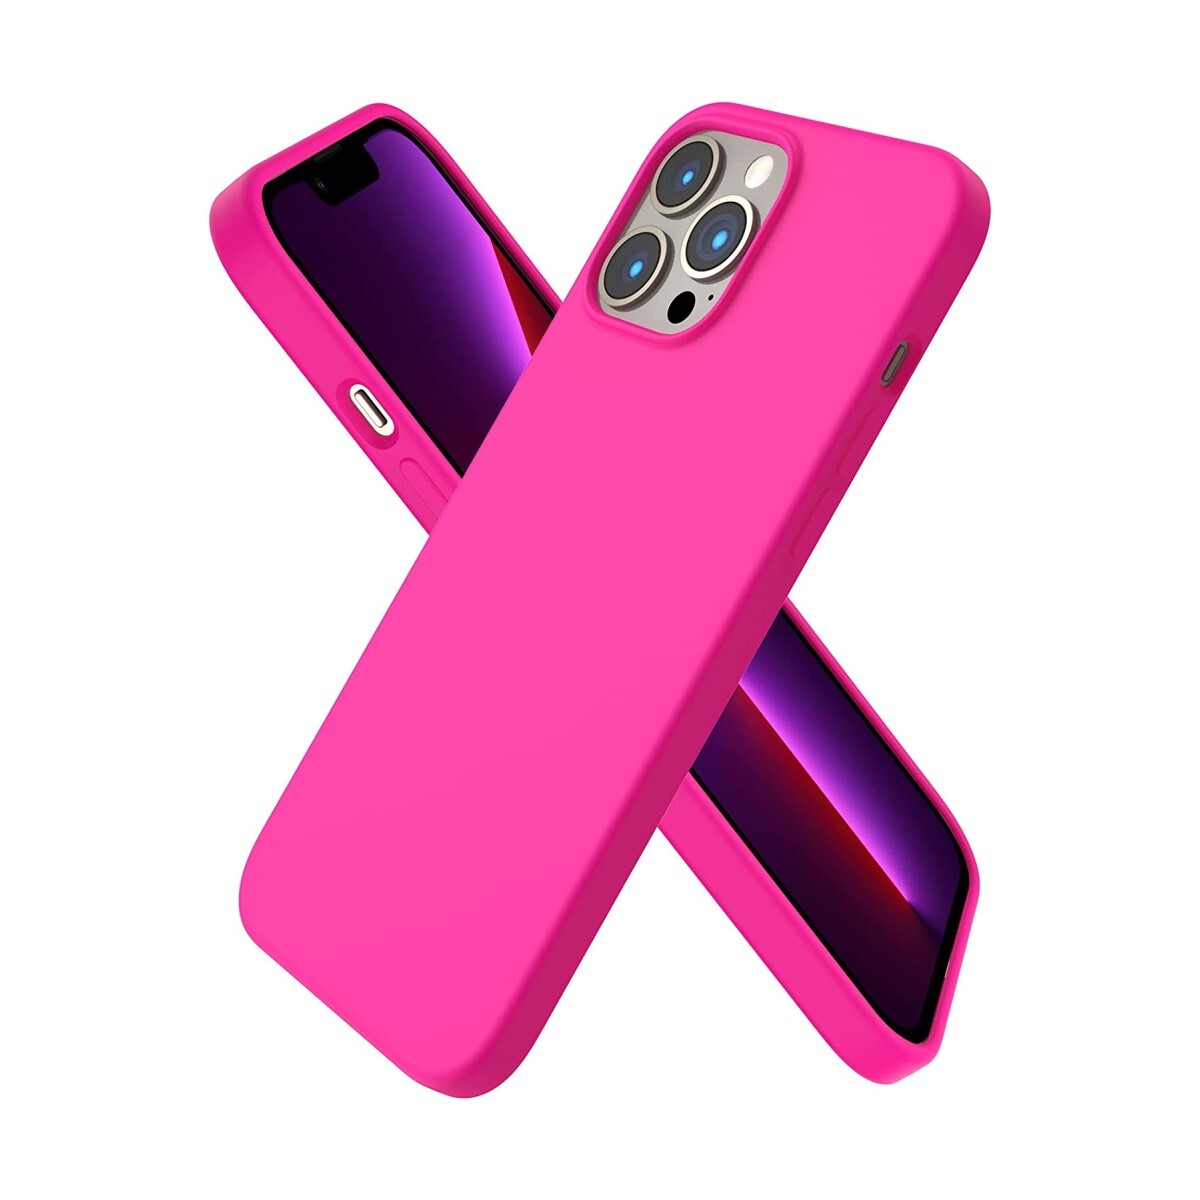 Protector case de silicona para iphone 13 pro max Rosa neon